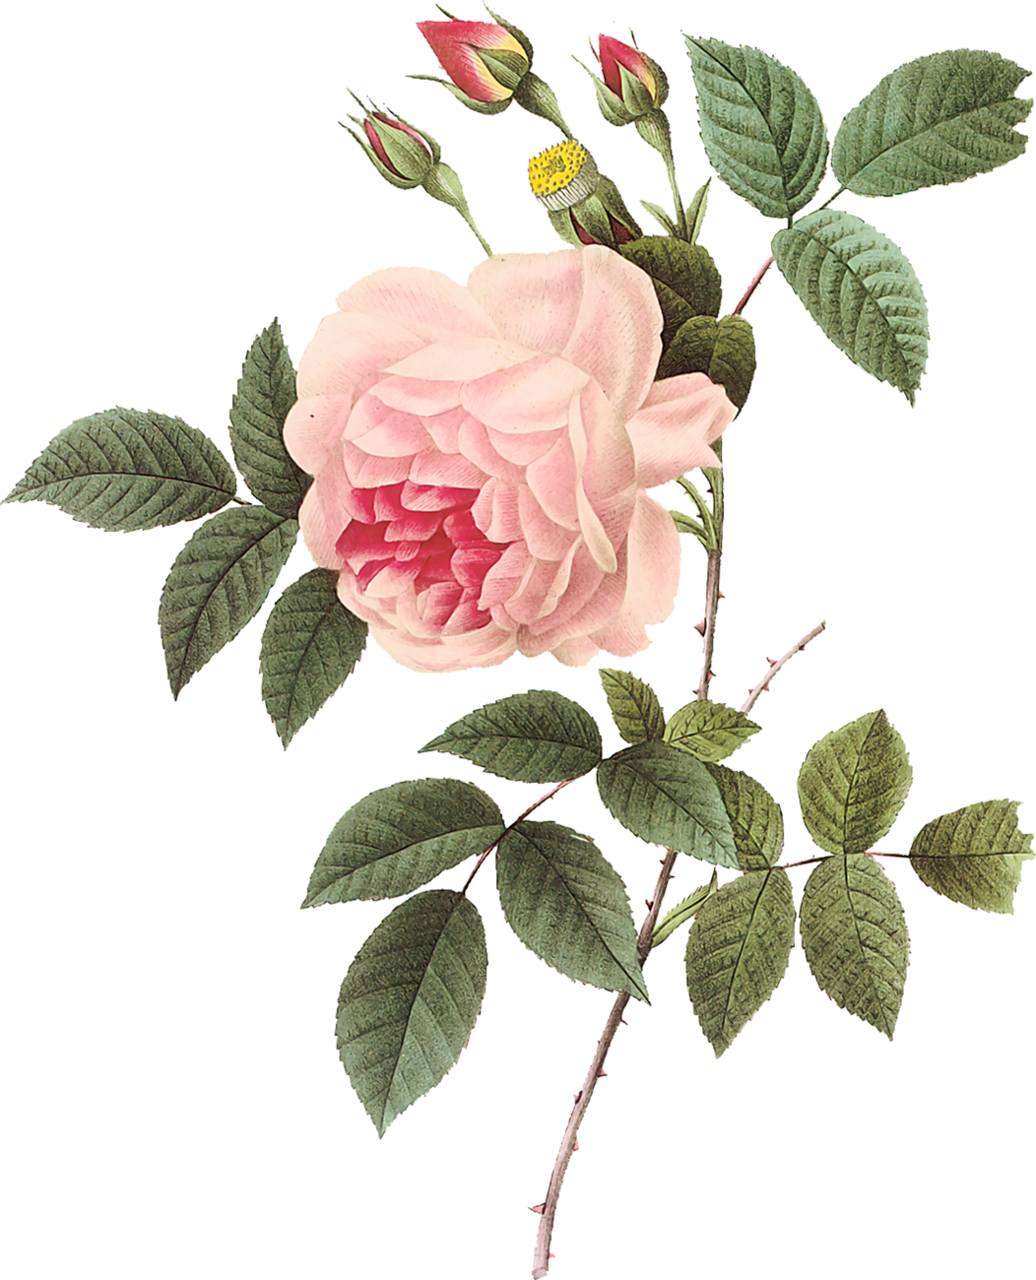 Vintage Rose Botanical Illustration - Vintage Rose Botanical Illustration (1036x1280)